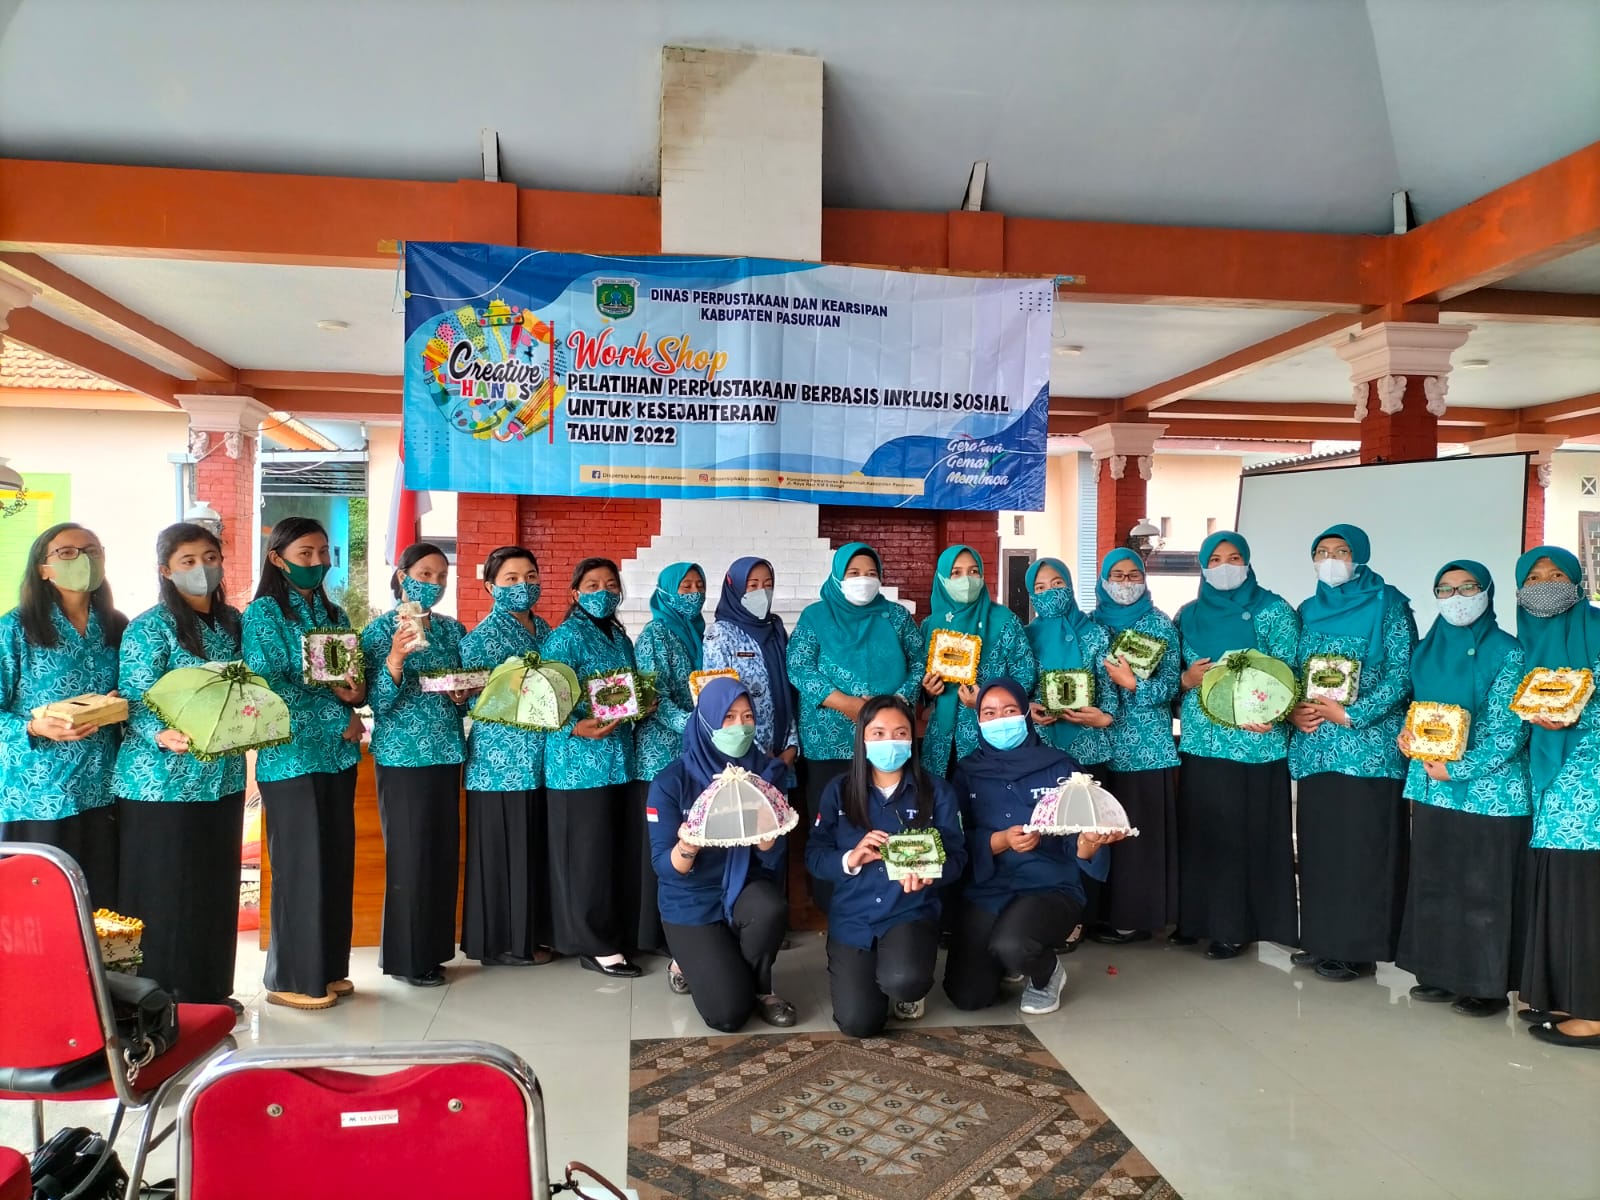 Workshop Pelatihan Perpustakaan Berbasis Inklusi Sosial Untuk Kesejahteraan di Kecamatan Tosari Tanggal 17 Maret 2022